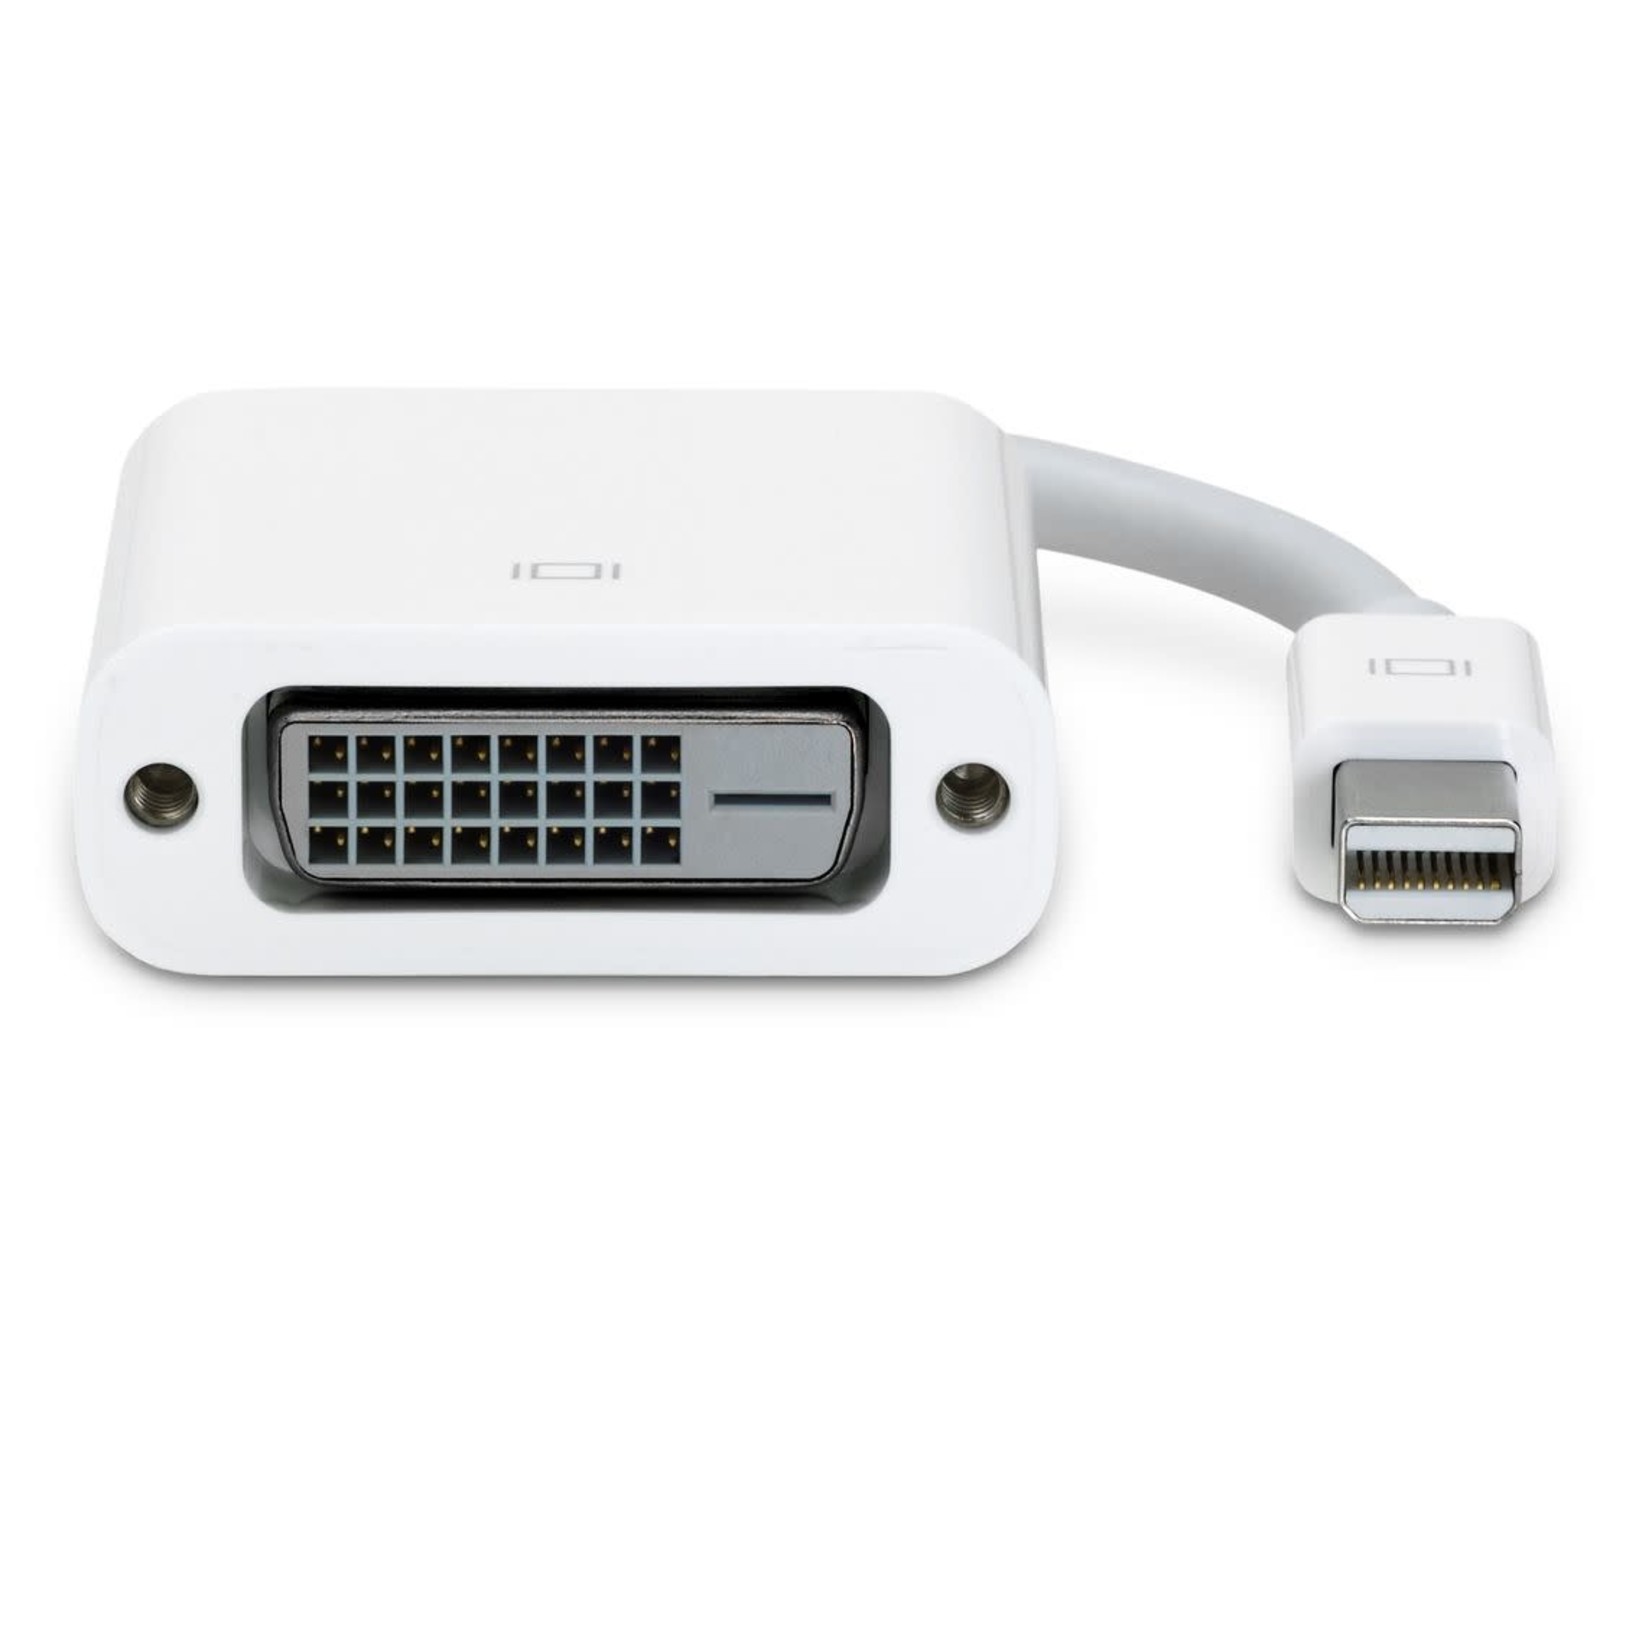 Apple Apple Mini-Display Port to DVI Adapter